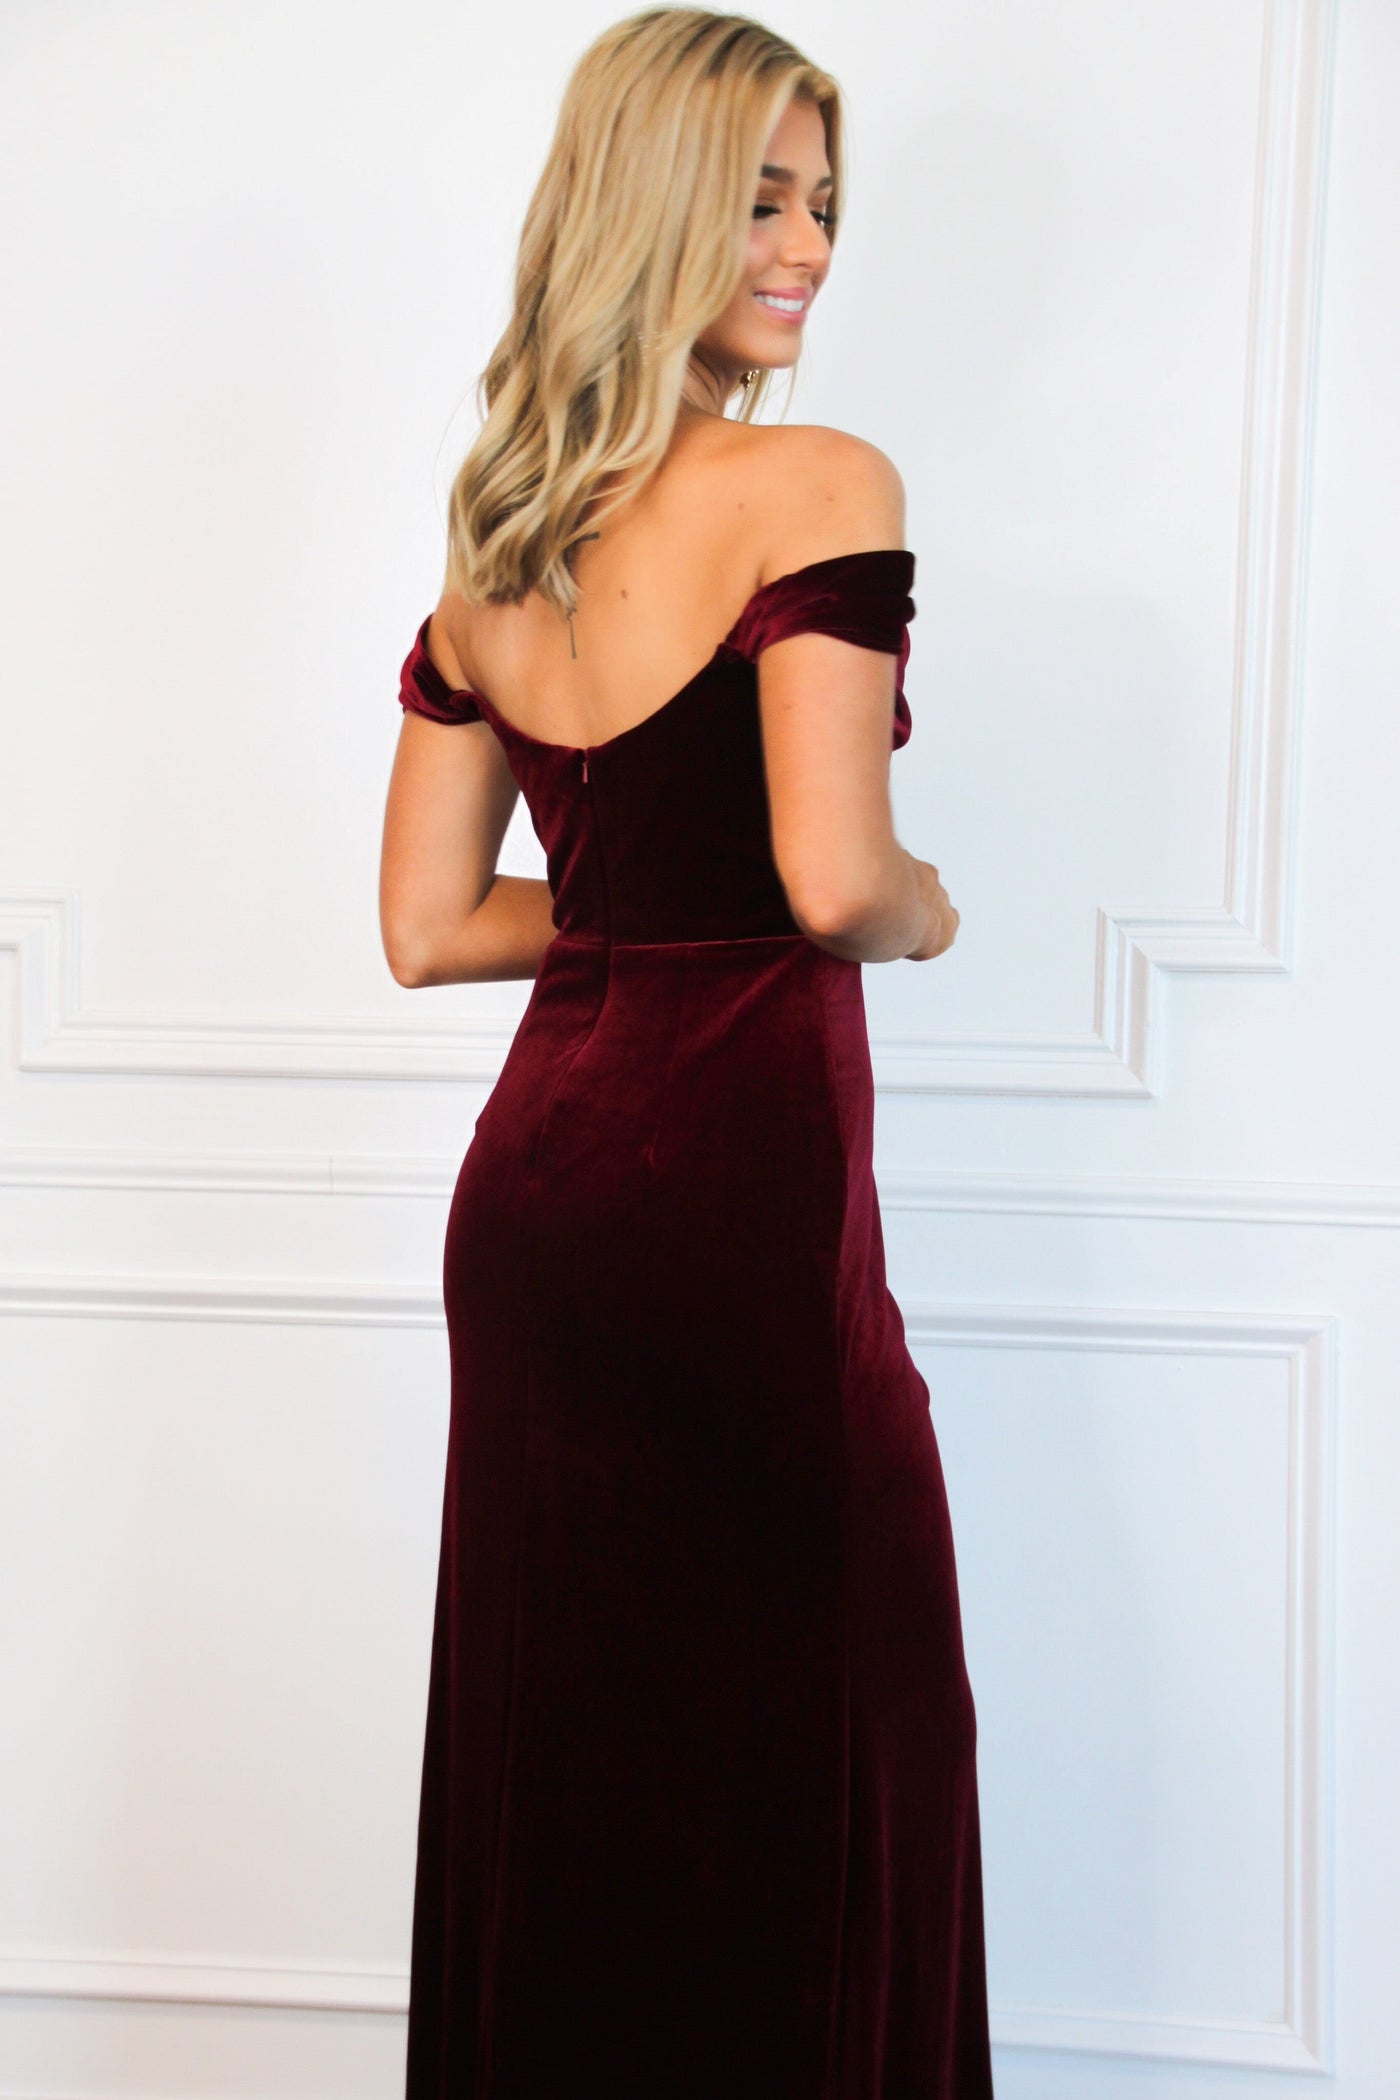 Evelynn Bustier Velvet Off Shoulder Formal Dress: Burgundy - Bella and Bloom Boutique